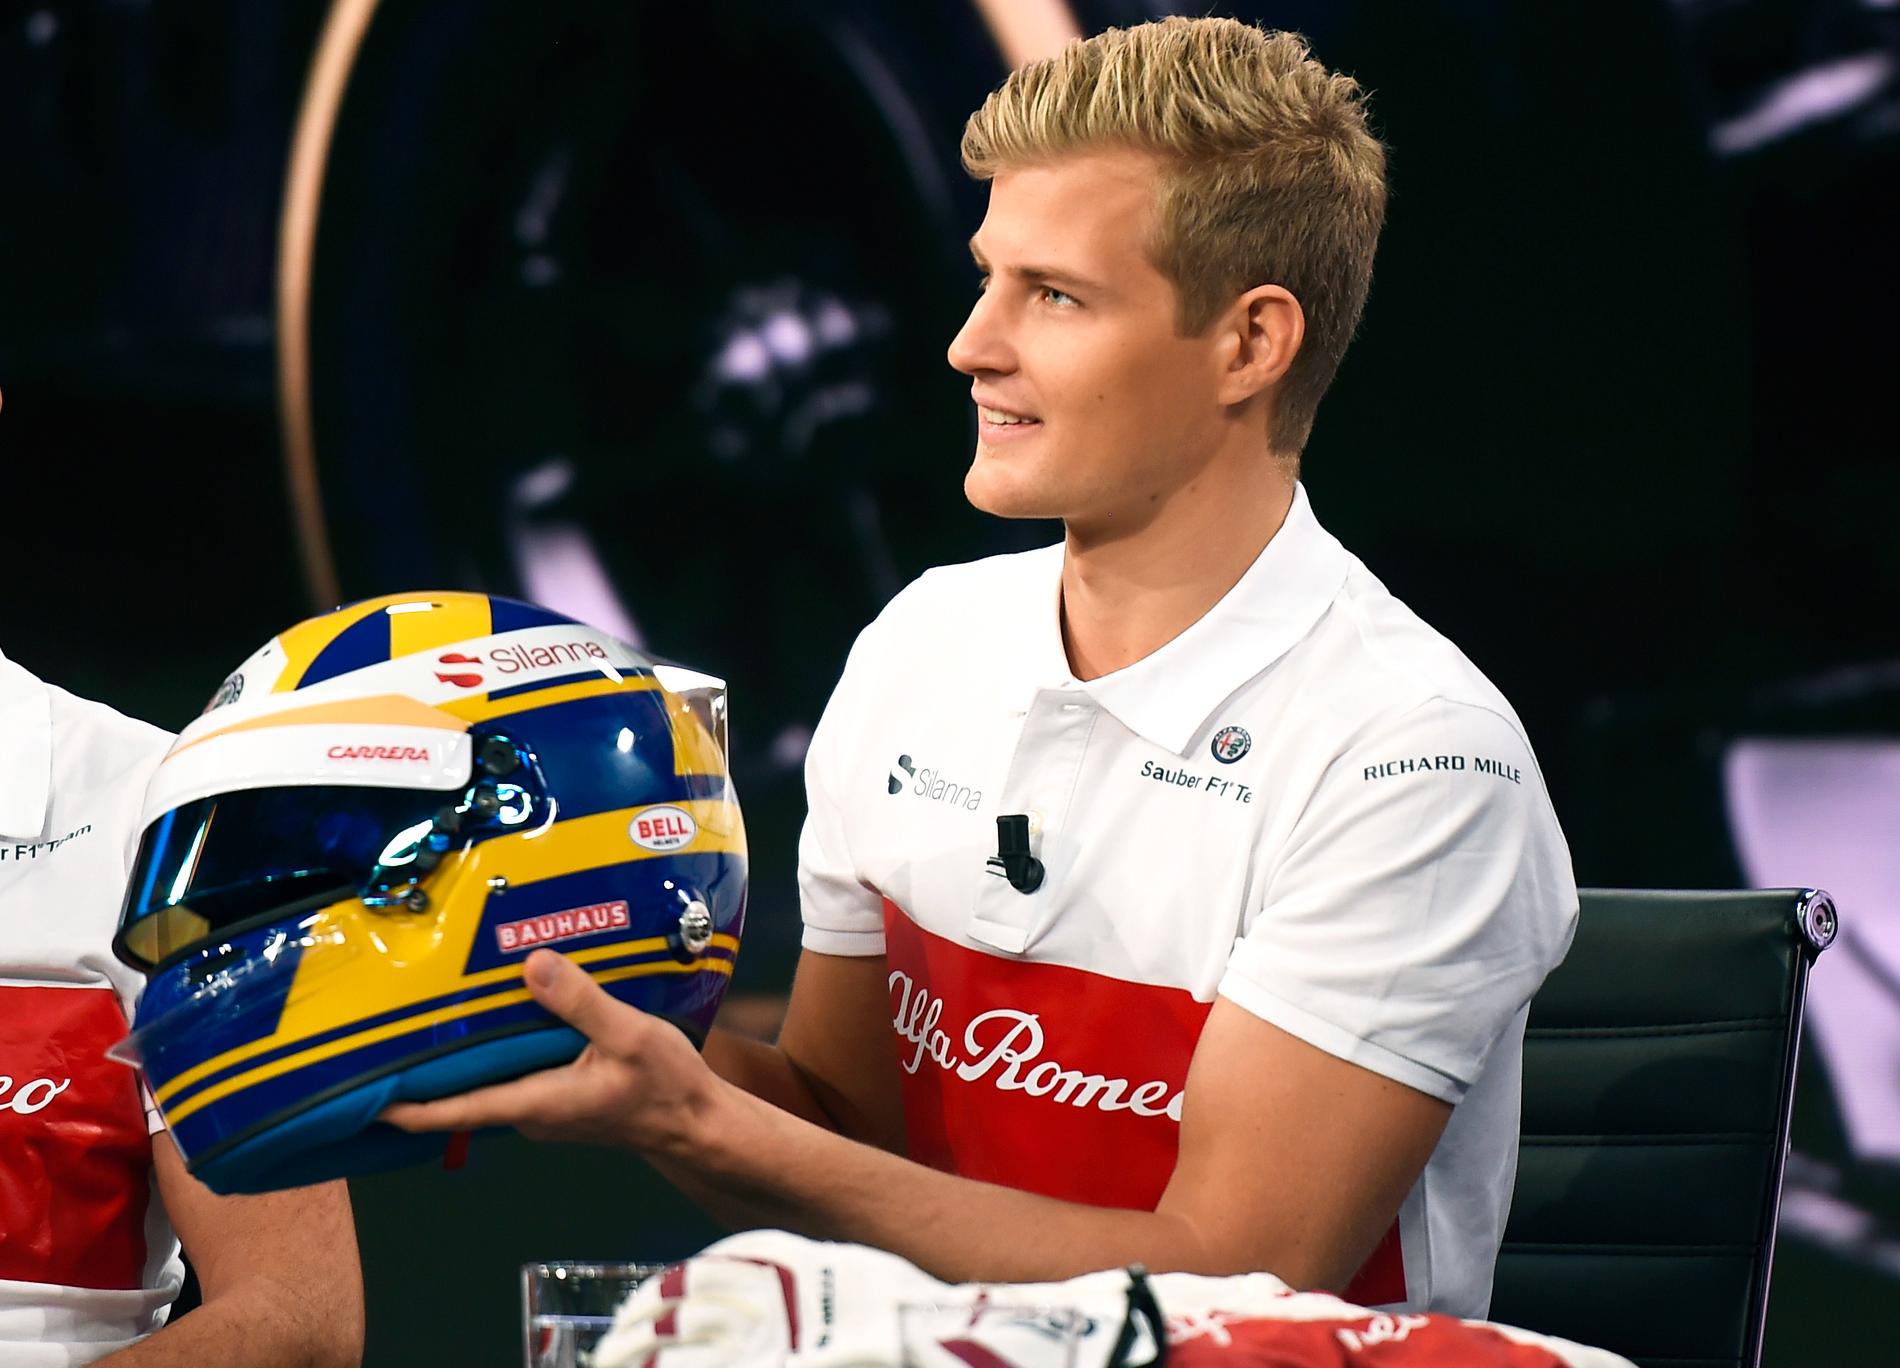 Det går knackigt för Marcus Ericsson i F1. Men svensken har inga tankar på att ge upp. ”Målet är att få stanna i F1 även nästa år”, säger han.